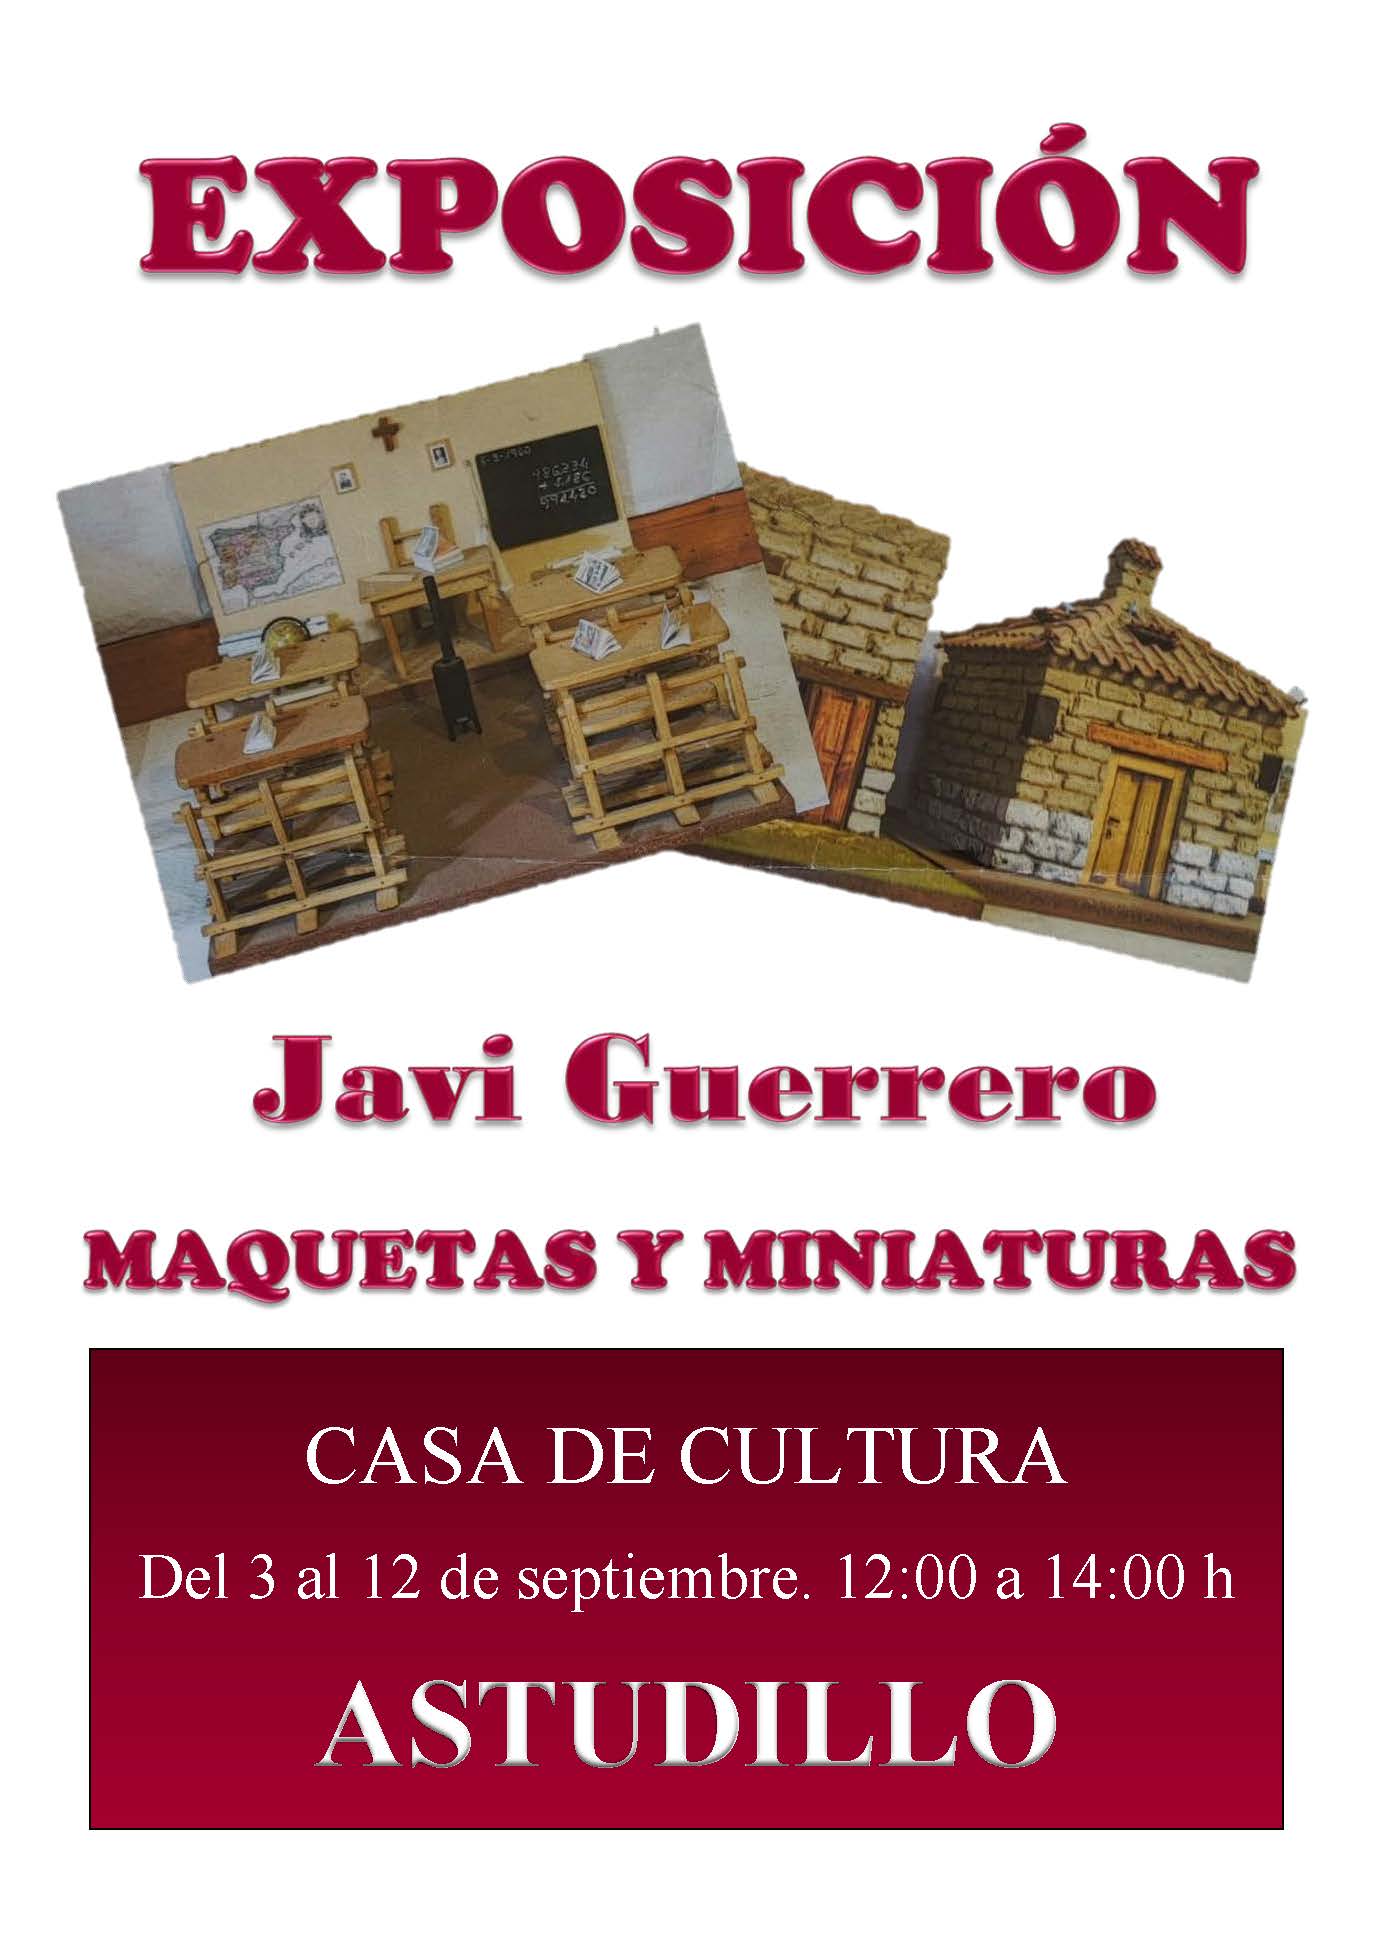 Exposición Javi Guerrero – Maquetas y miniaturas